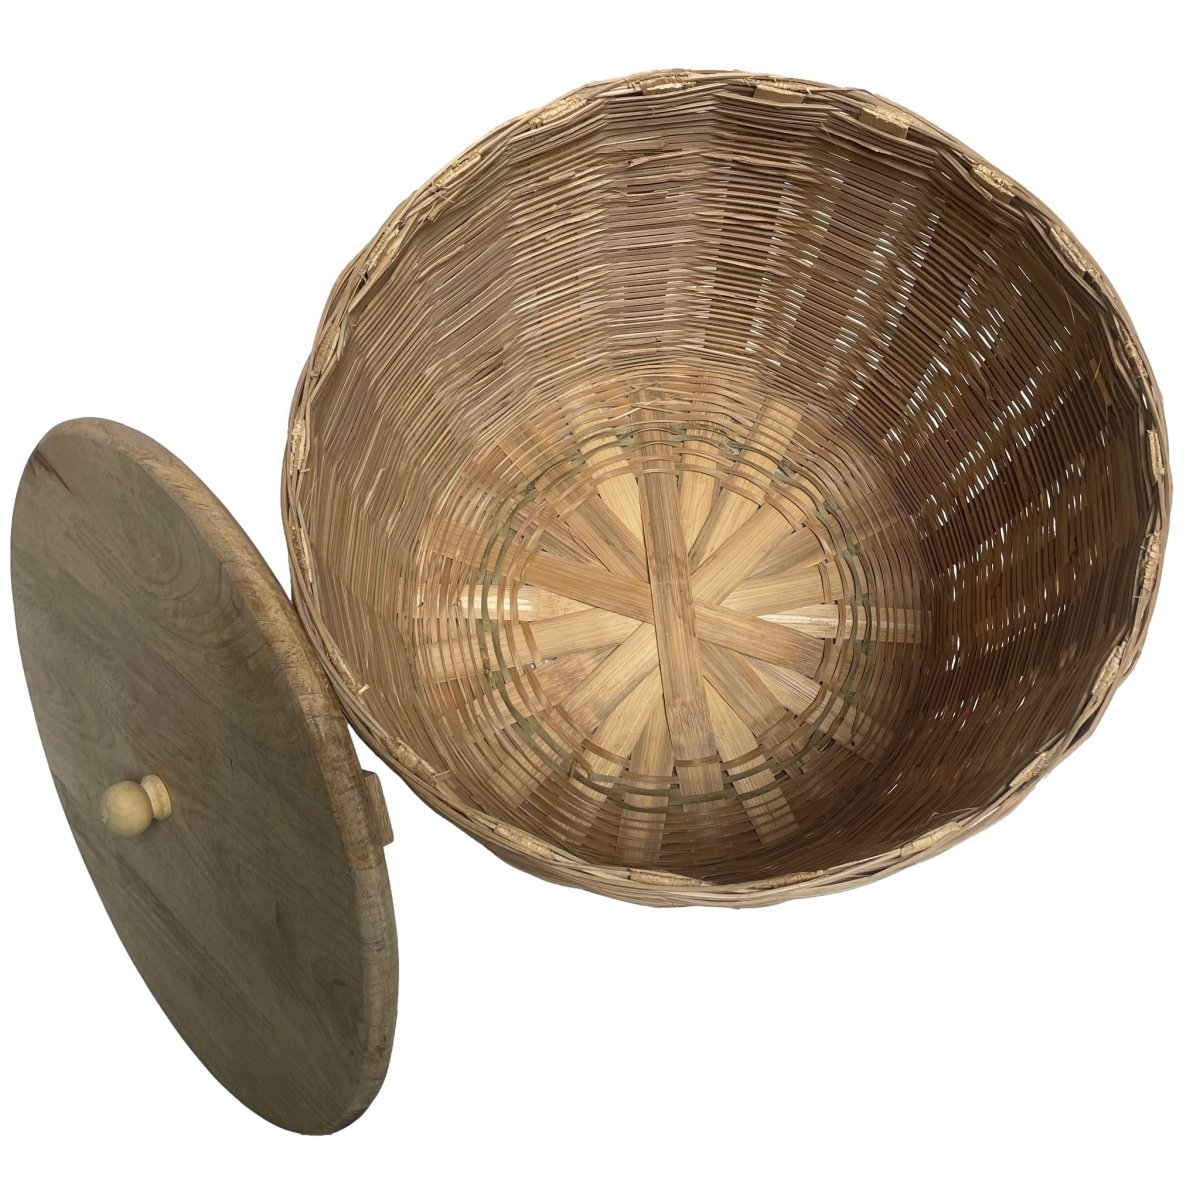 Grand panier en rotin avec couvercle en bois de manguier - Rustic Furniture Outlet